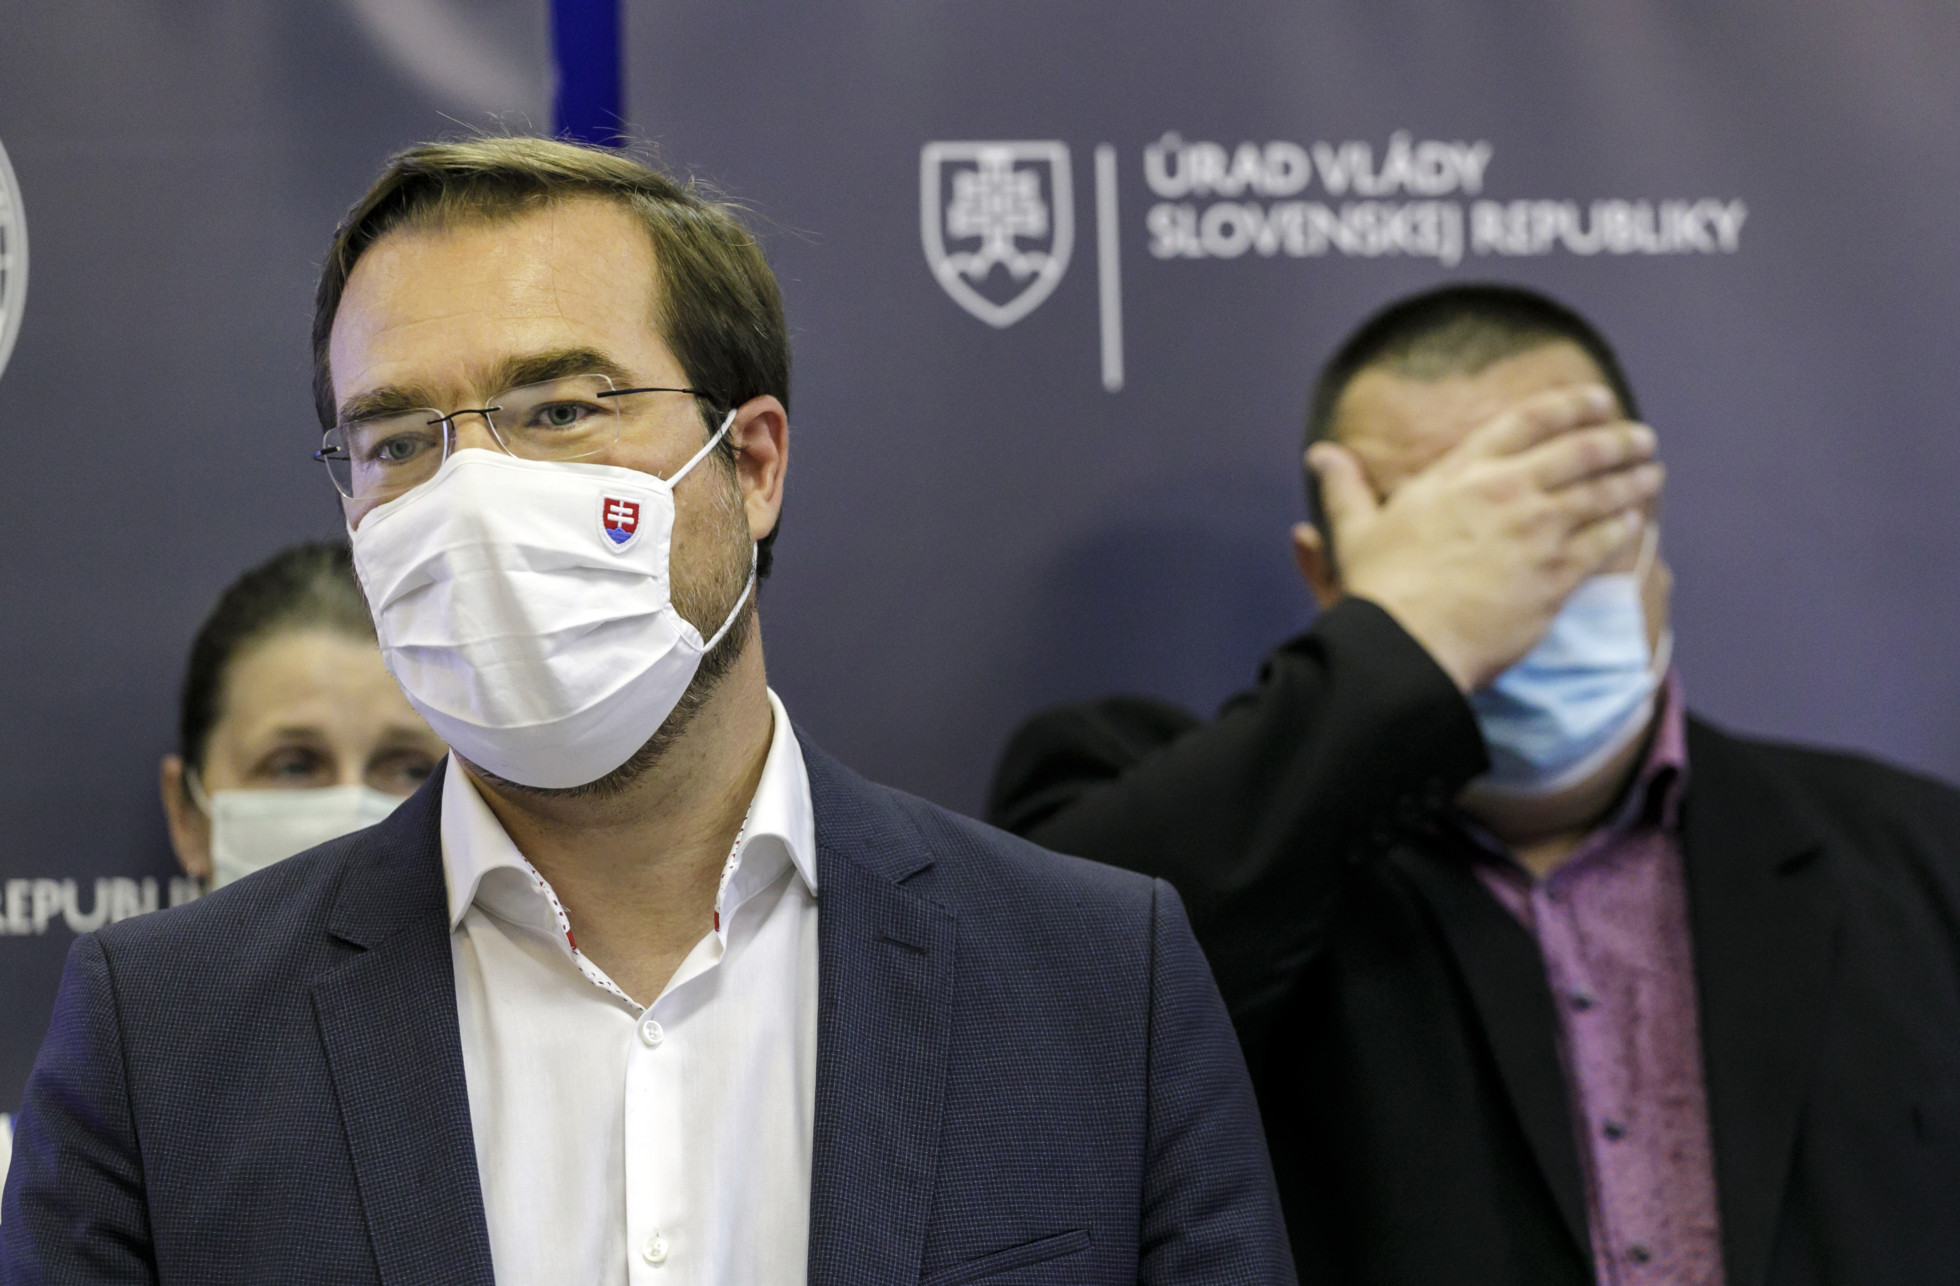 Koronavírus: Na Slovensku budú opäť platiť obmedzenia a konzílium odborníkov odporúča zvážiť cestovanie do zahraničia (video)